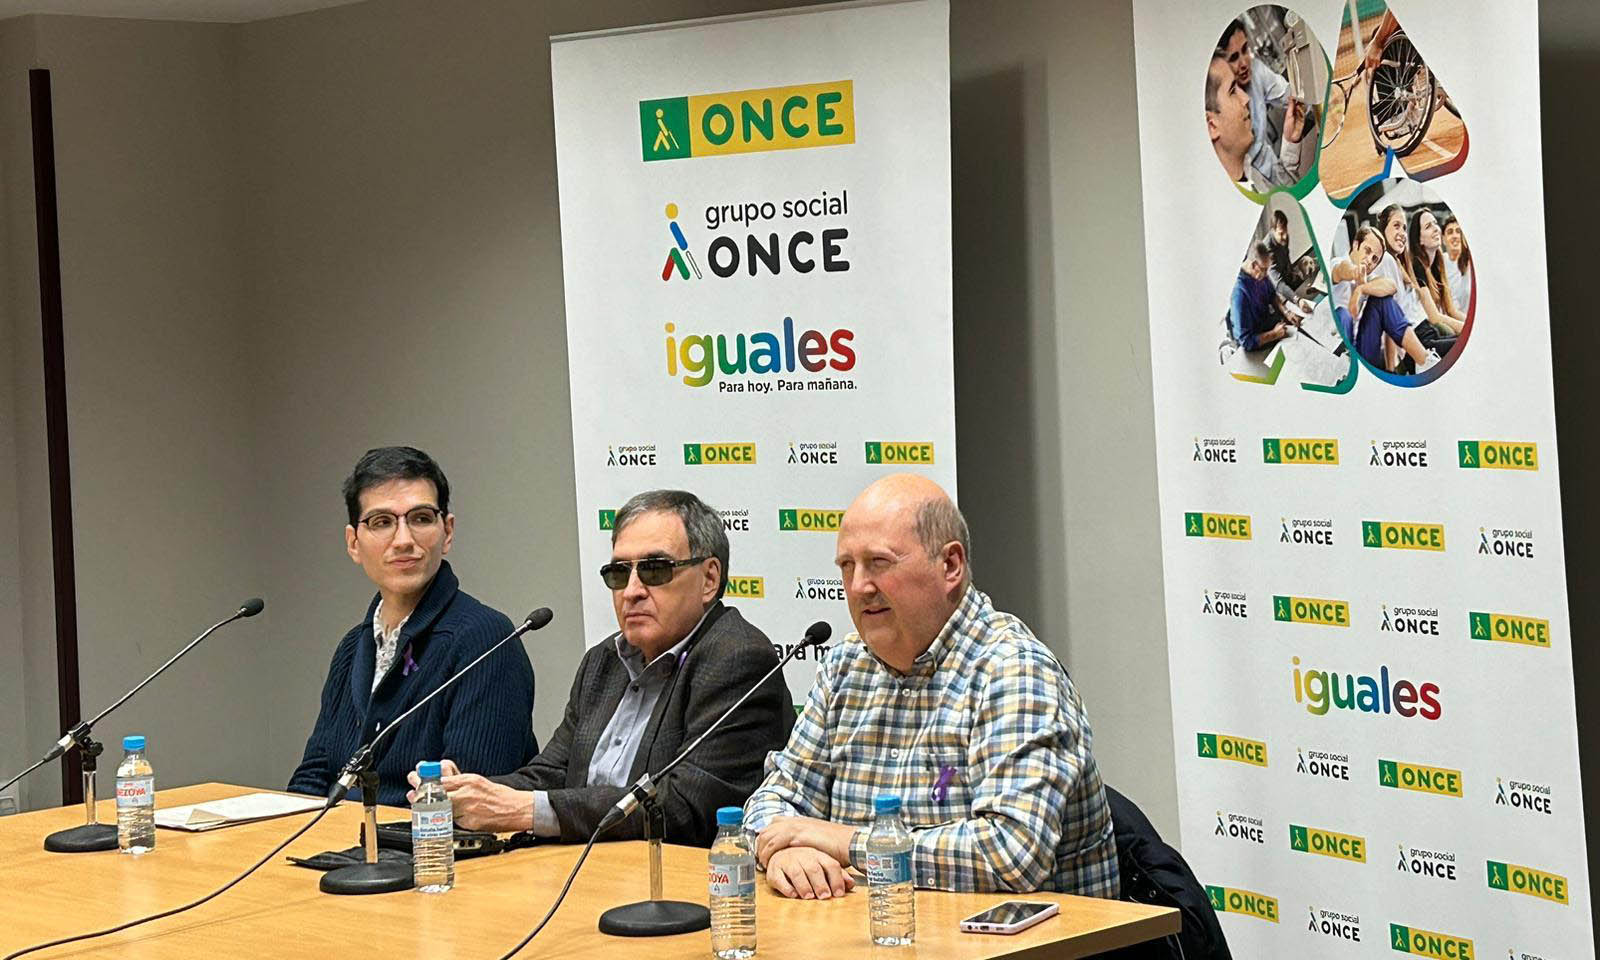 Juan Carlos, Javier Moreno y Alberto Gil en el momento de la charla